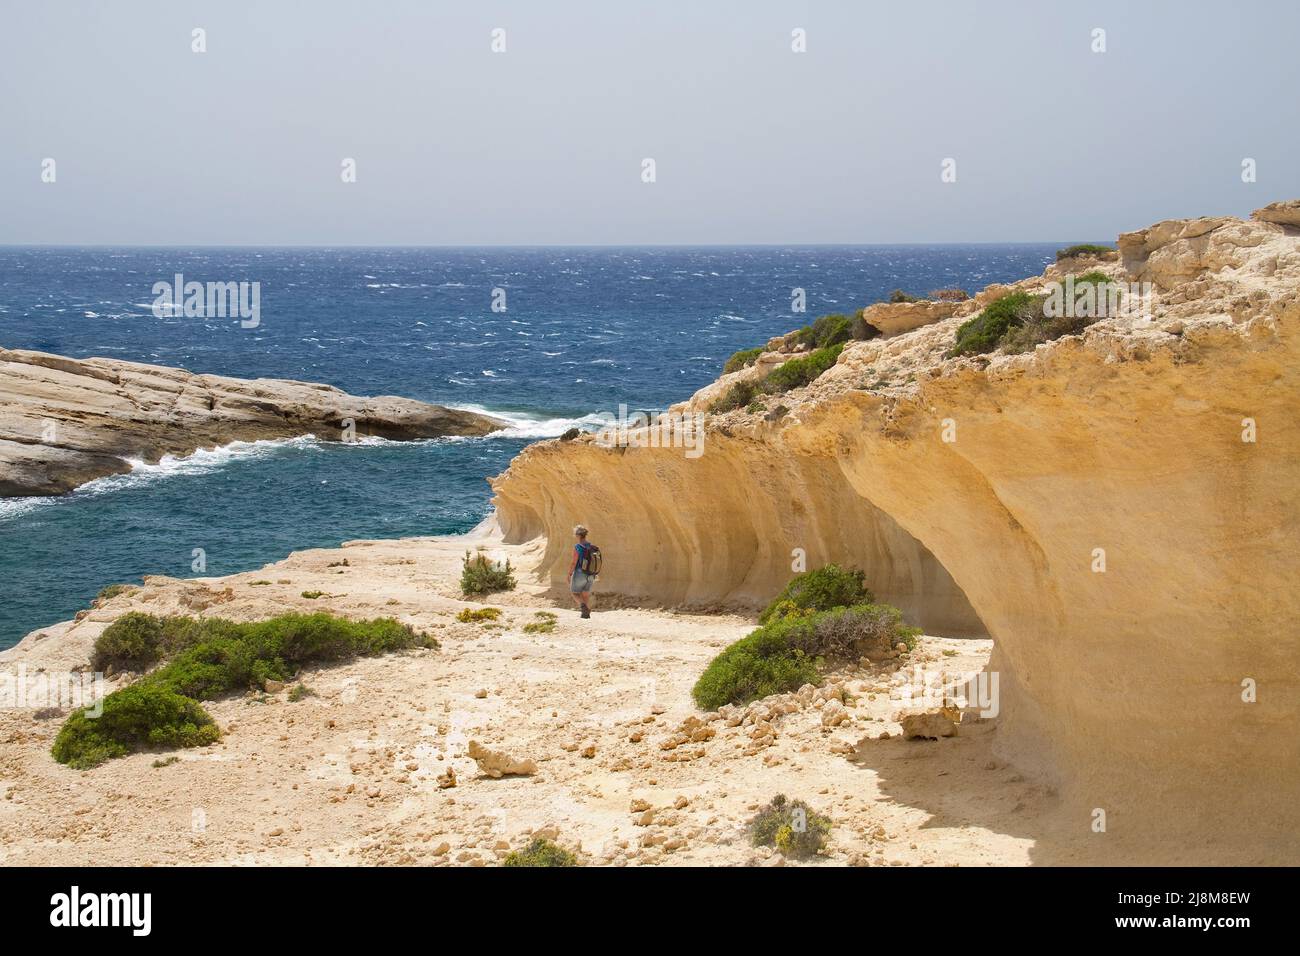 La muesca ondulada en capas elevadas de Creta, Grecia, muestra que la tierra se ha levantado o que el nivel del mar ha caído Foto de stock